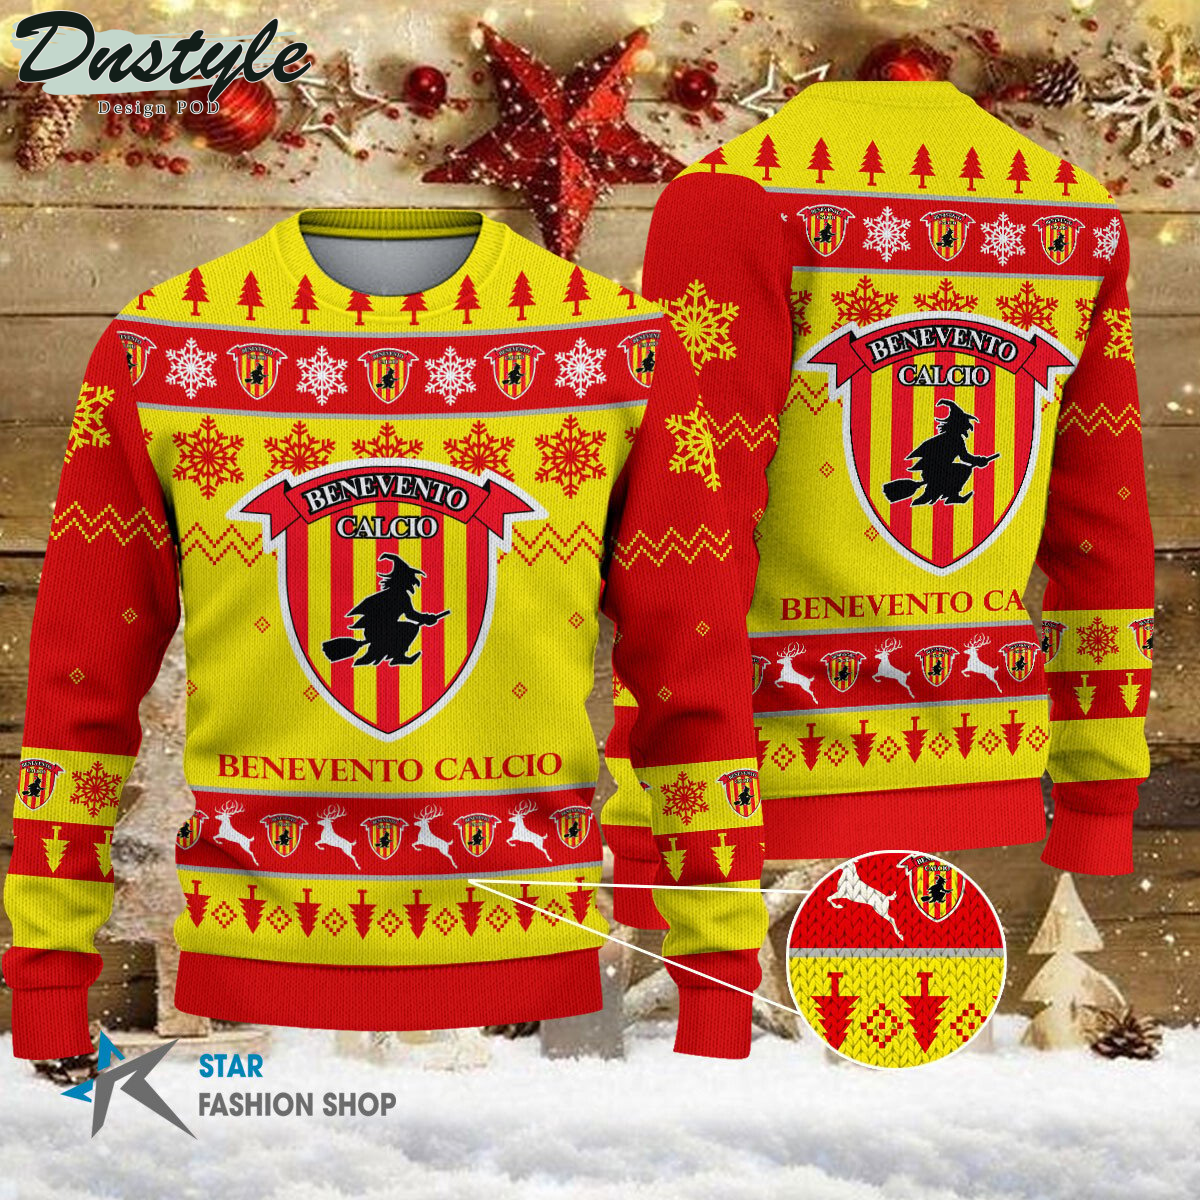 Ternana Calcio ugly christmas sweater